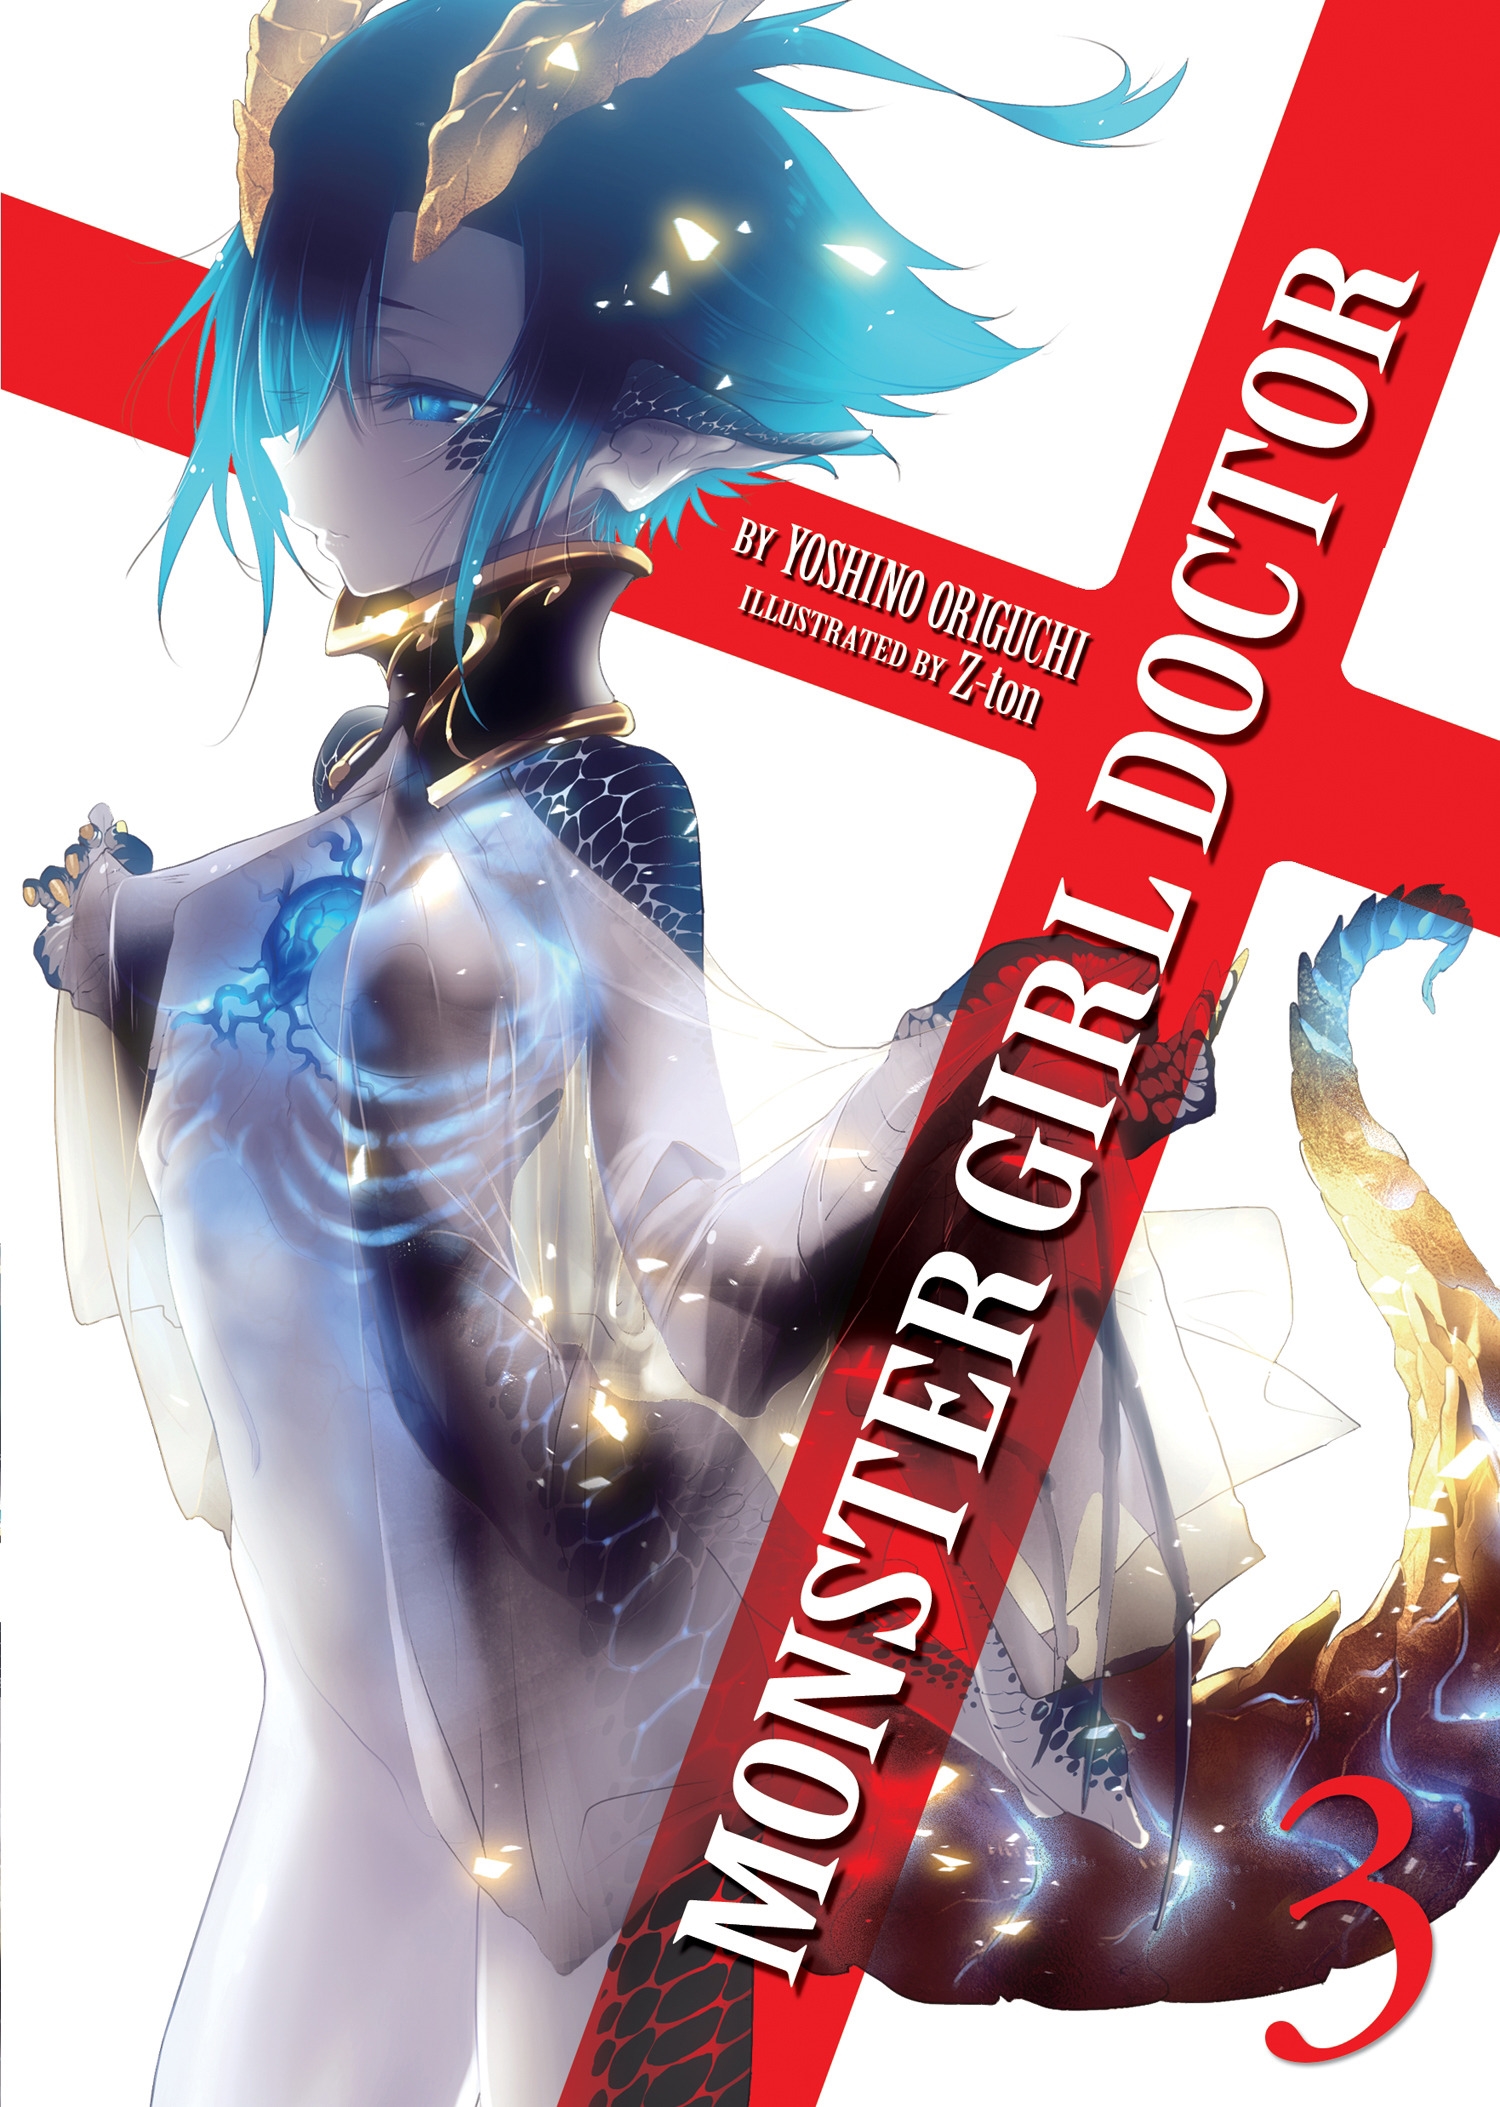 Monster Girl Doctor Zero (Light Novel) Manga